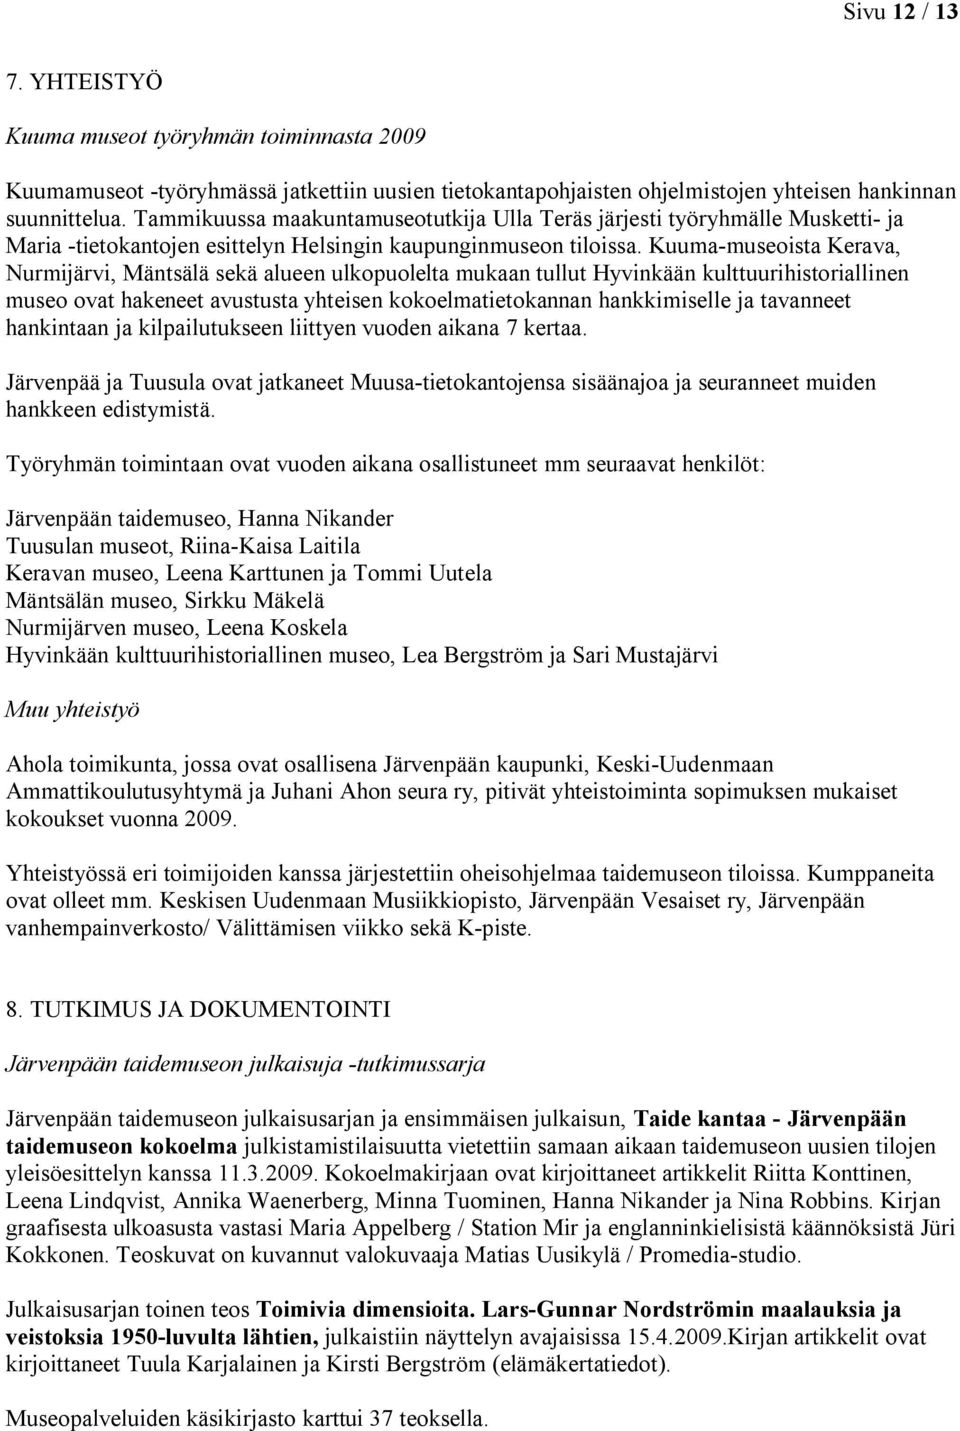 Kuuma-museoista Kerava, Nurmijärvi, Mäntsälä sekä alueen ulkopuolelta mukaan tullut Hyvinkään kulttuurihistoriallinen museo ovat hakeneet avustusta yhteisen kokoelmatietokannan hankkimiselle ja